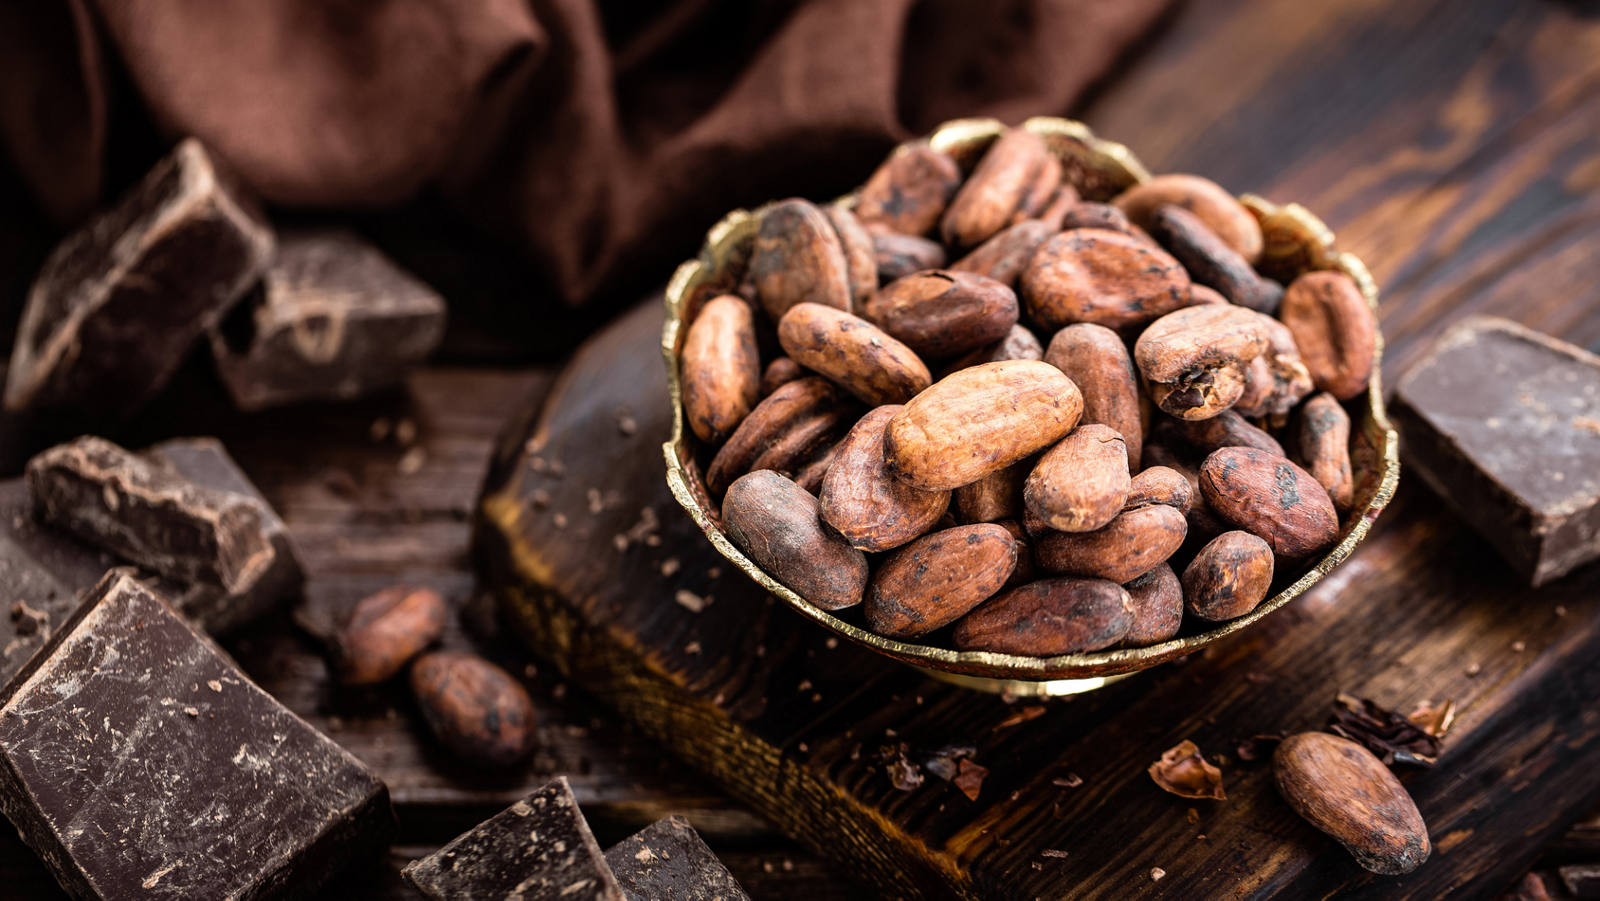 Eine Versuchung wert: Selbstgemachte Schokolade aus Kakaobohnen